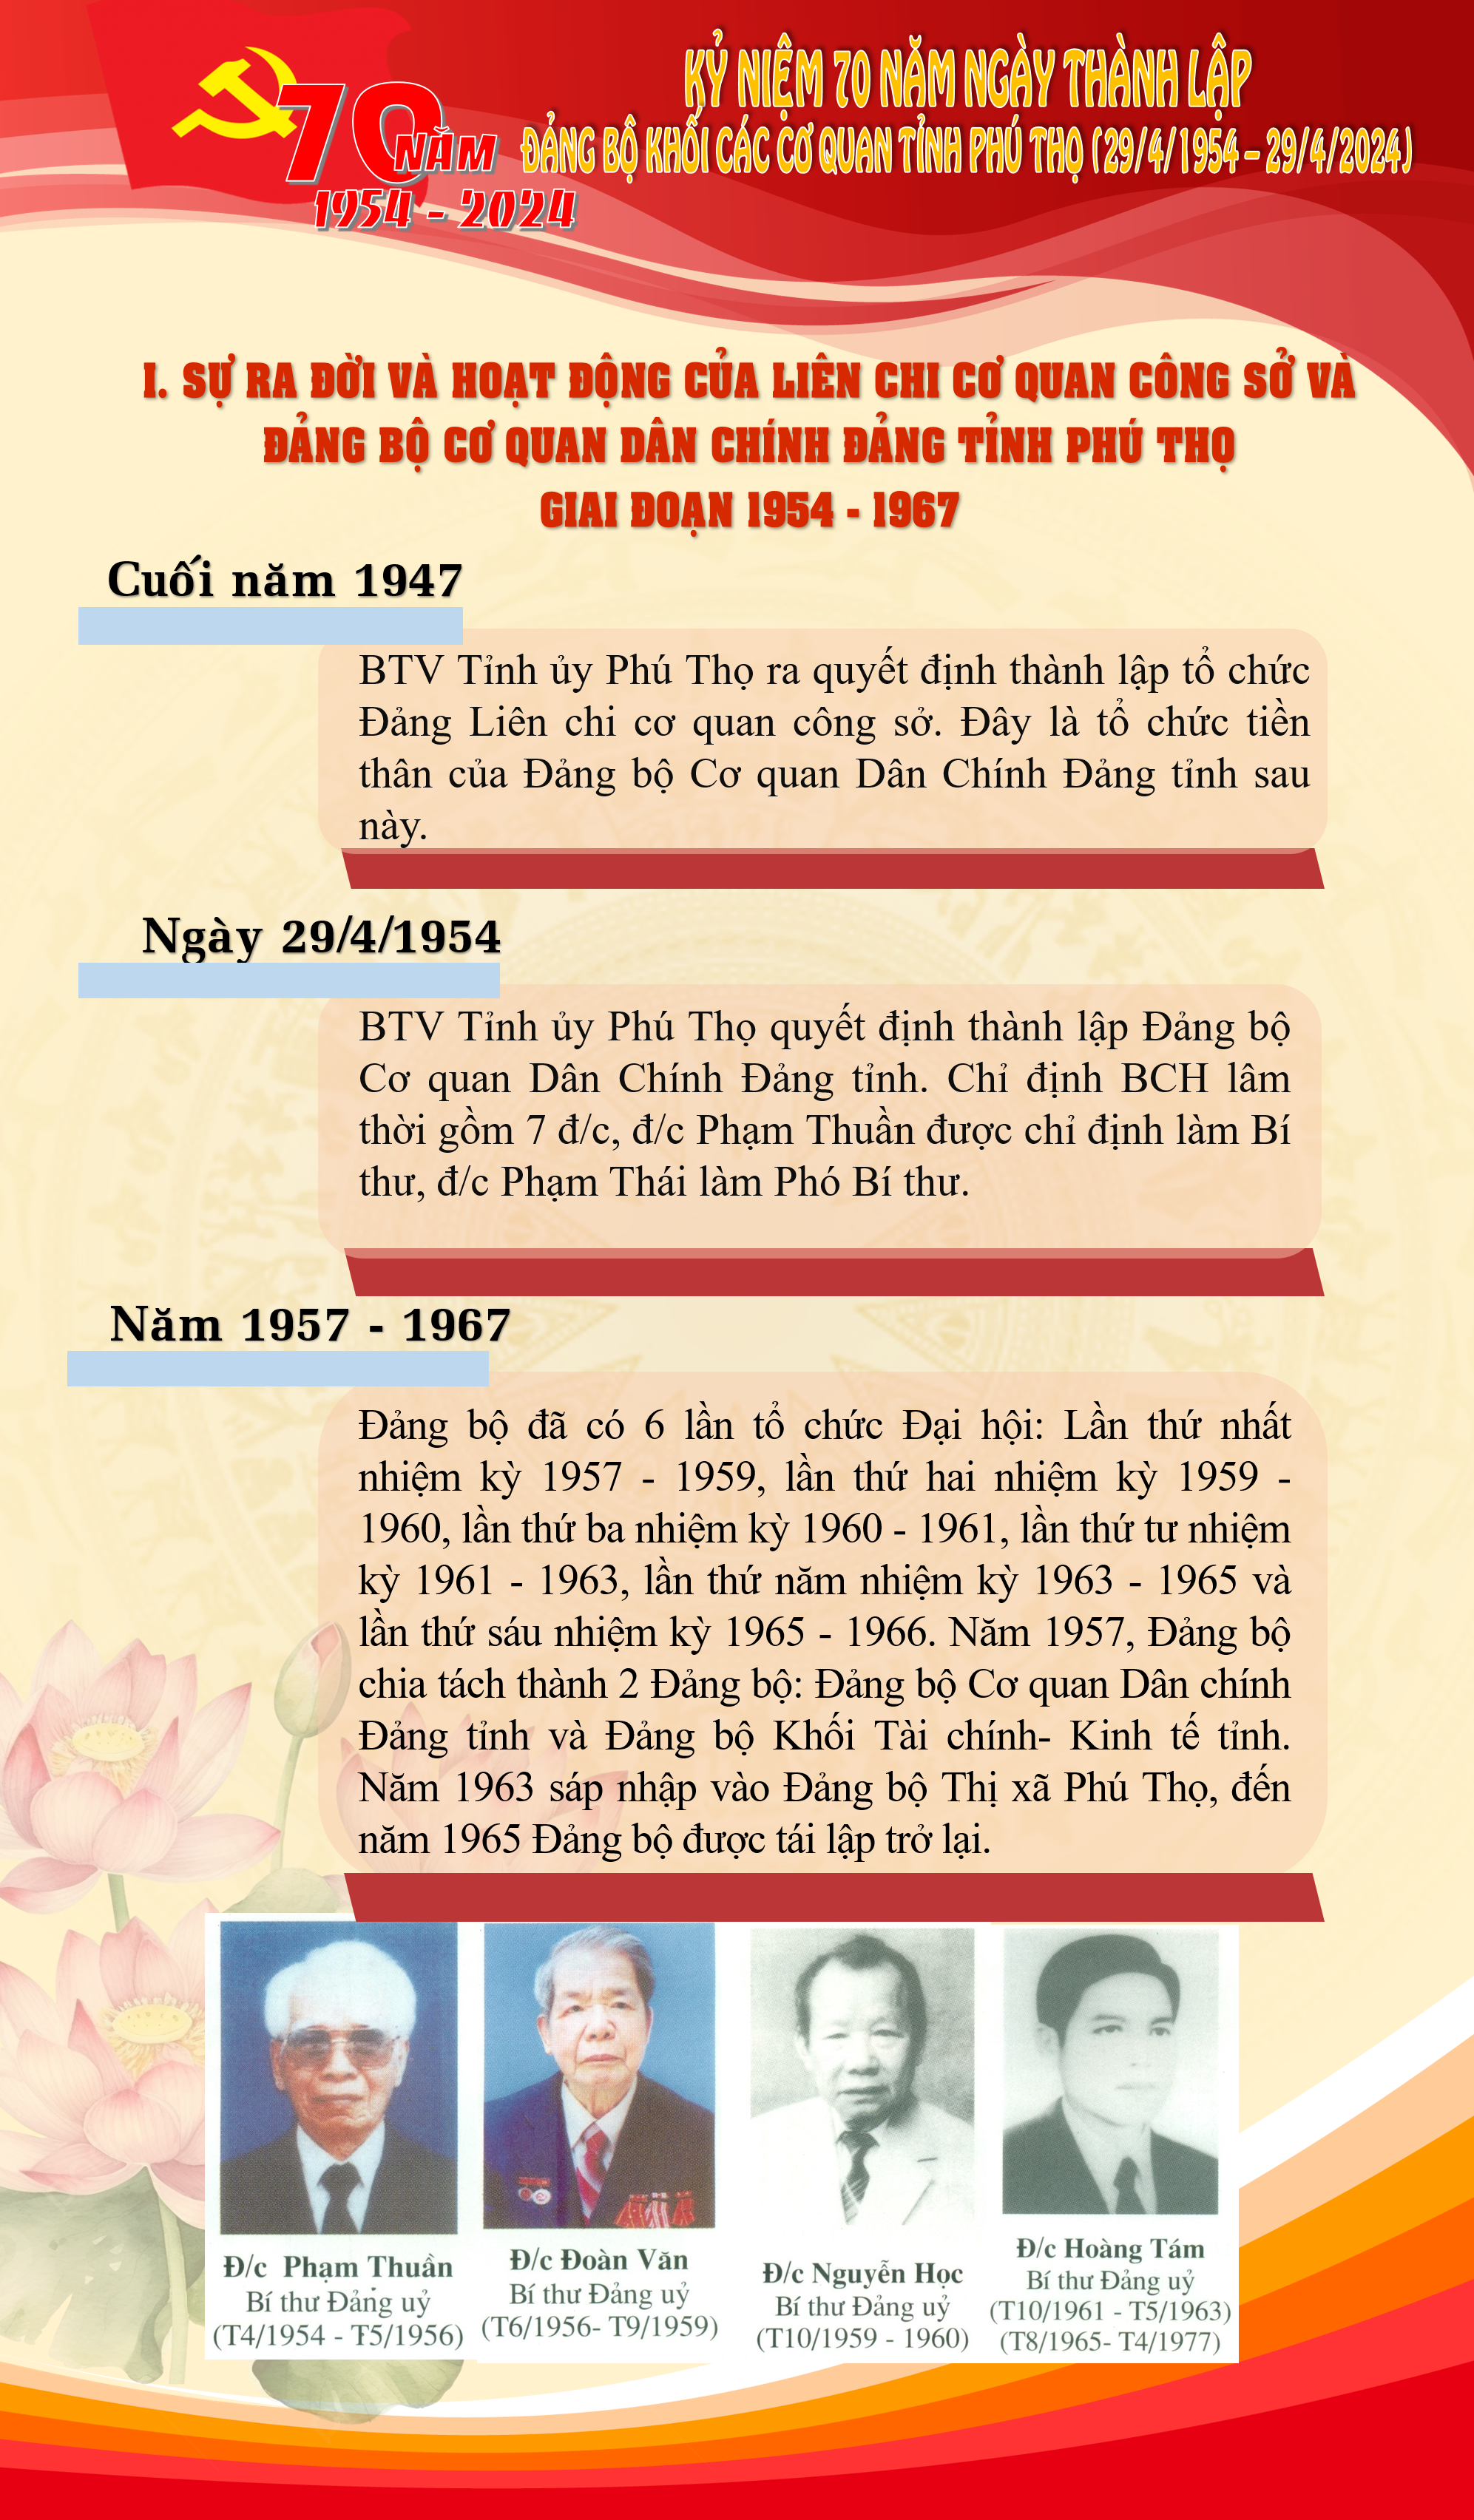 Tuyên truyền kỷ niệm 70 năm Ngày thành lập Đảng bộ Khối các cơ quan tỉnh Phú Thọ (29/4/1954 - 29/4/2024)